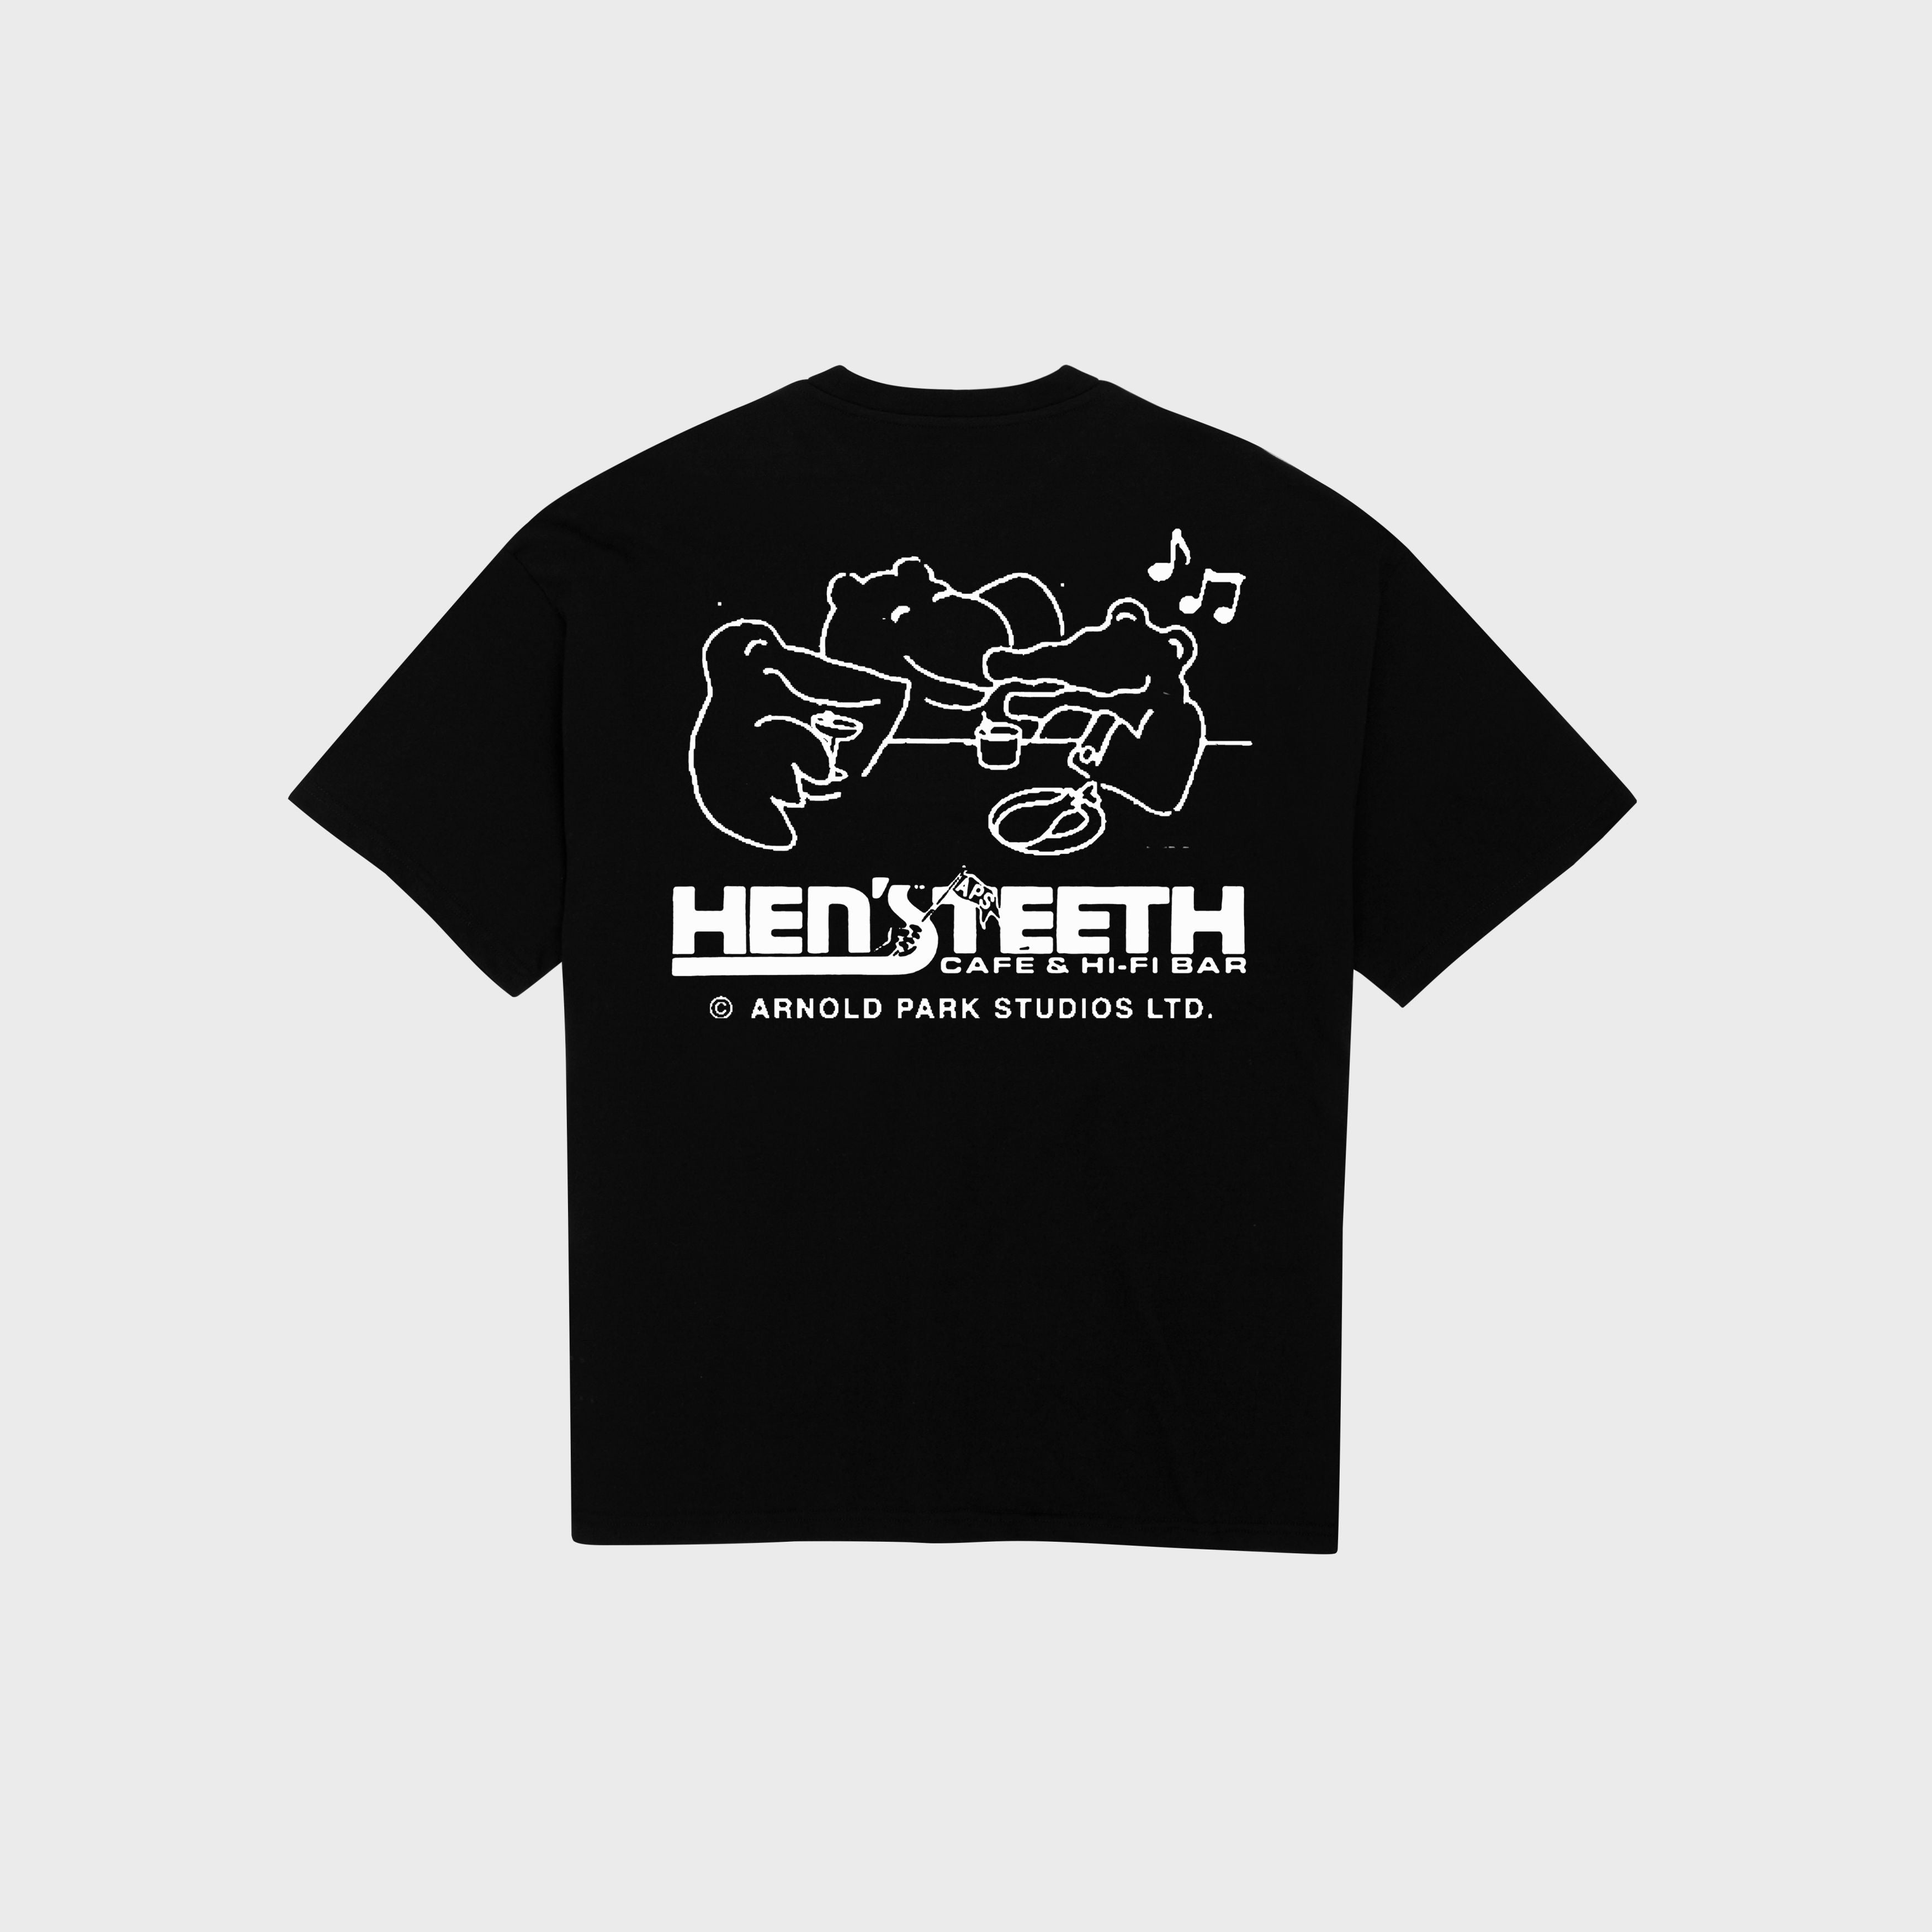 Copy of Arnold Park Studio x Hen's Teeth Tee (Black),Hen's Teeth Store - Hen's Teeth 